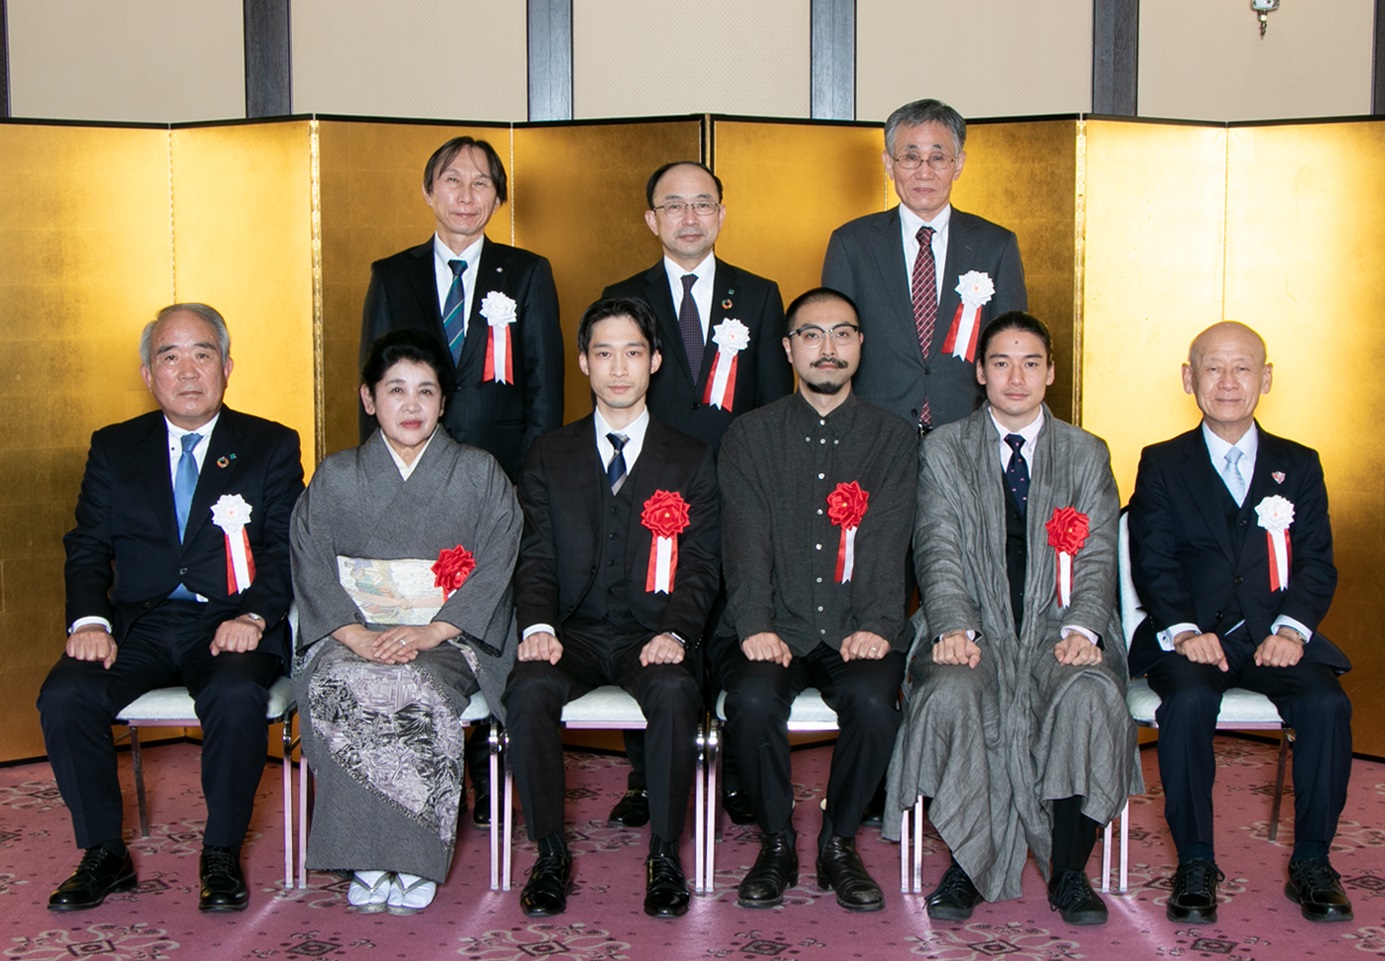 前列左から3番目から、井田さん、諫山さん、手嶋さん